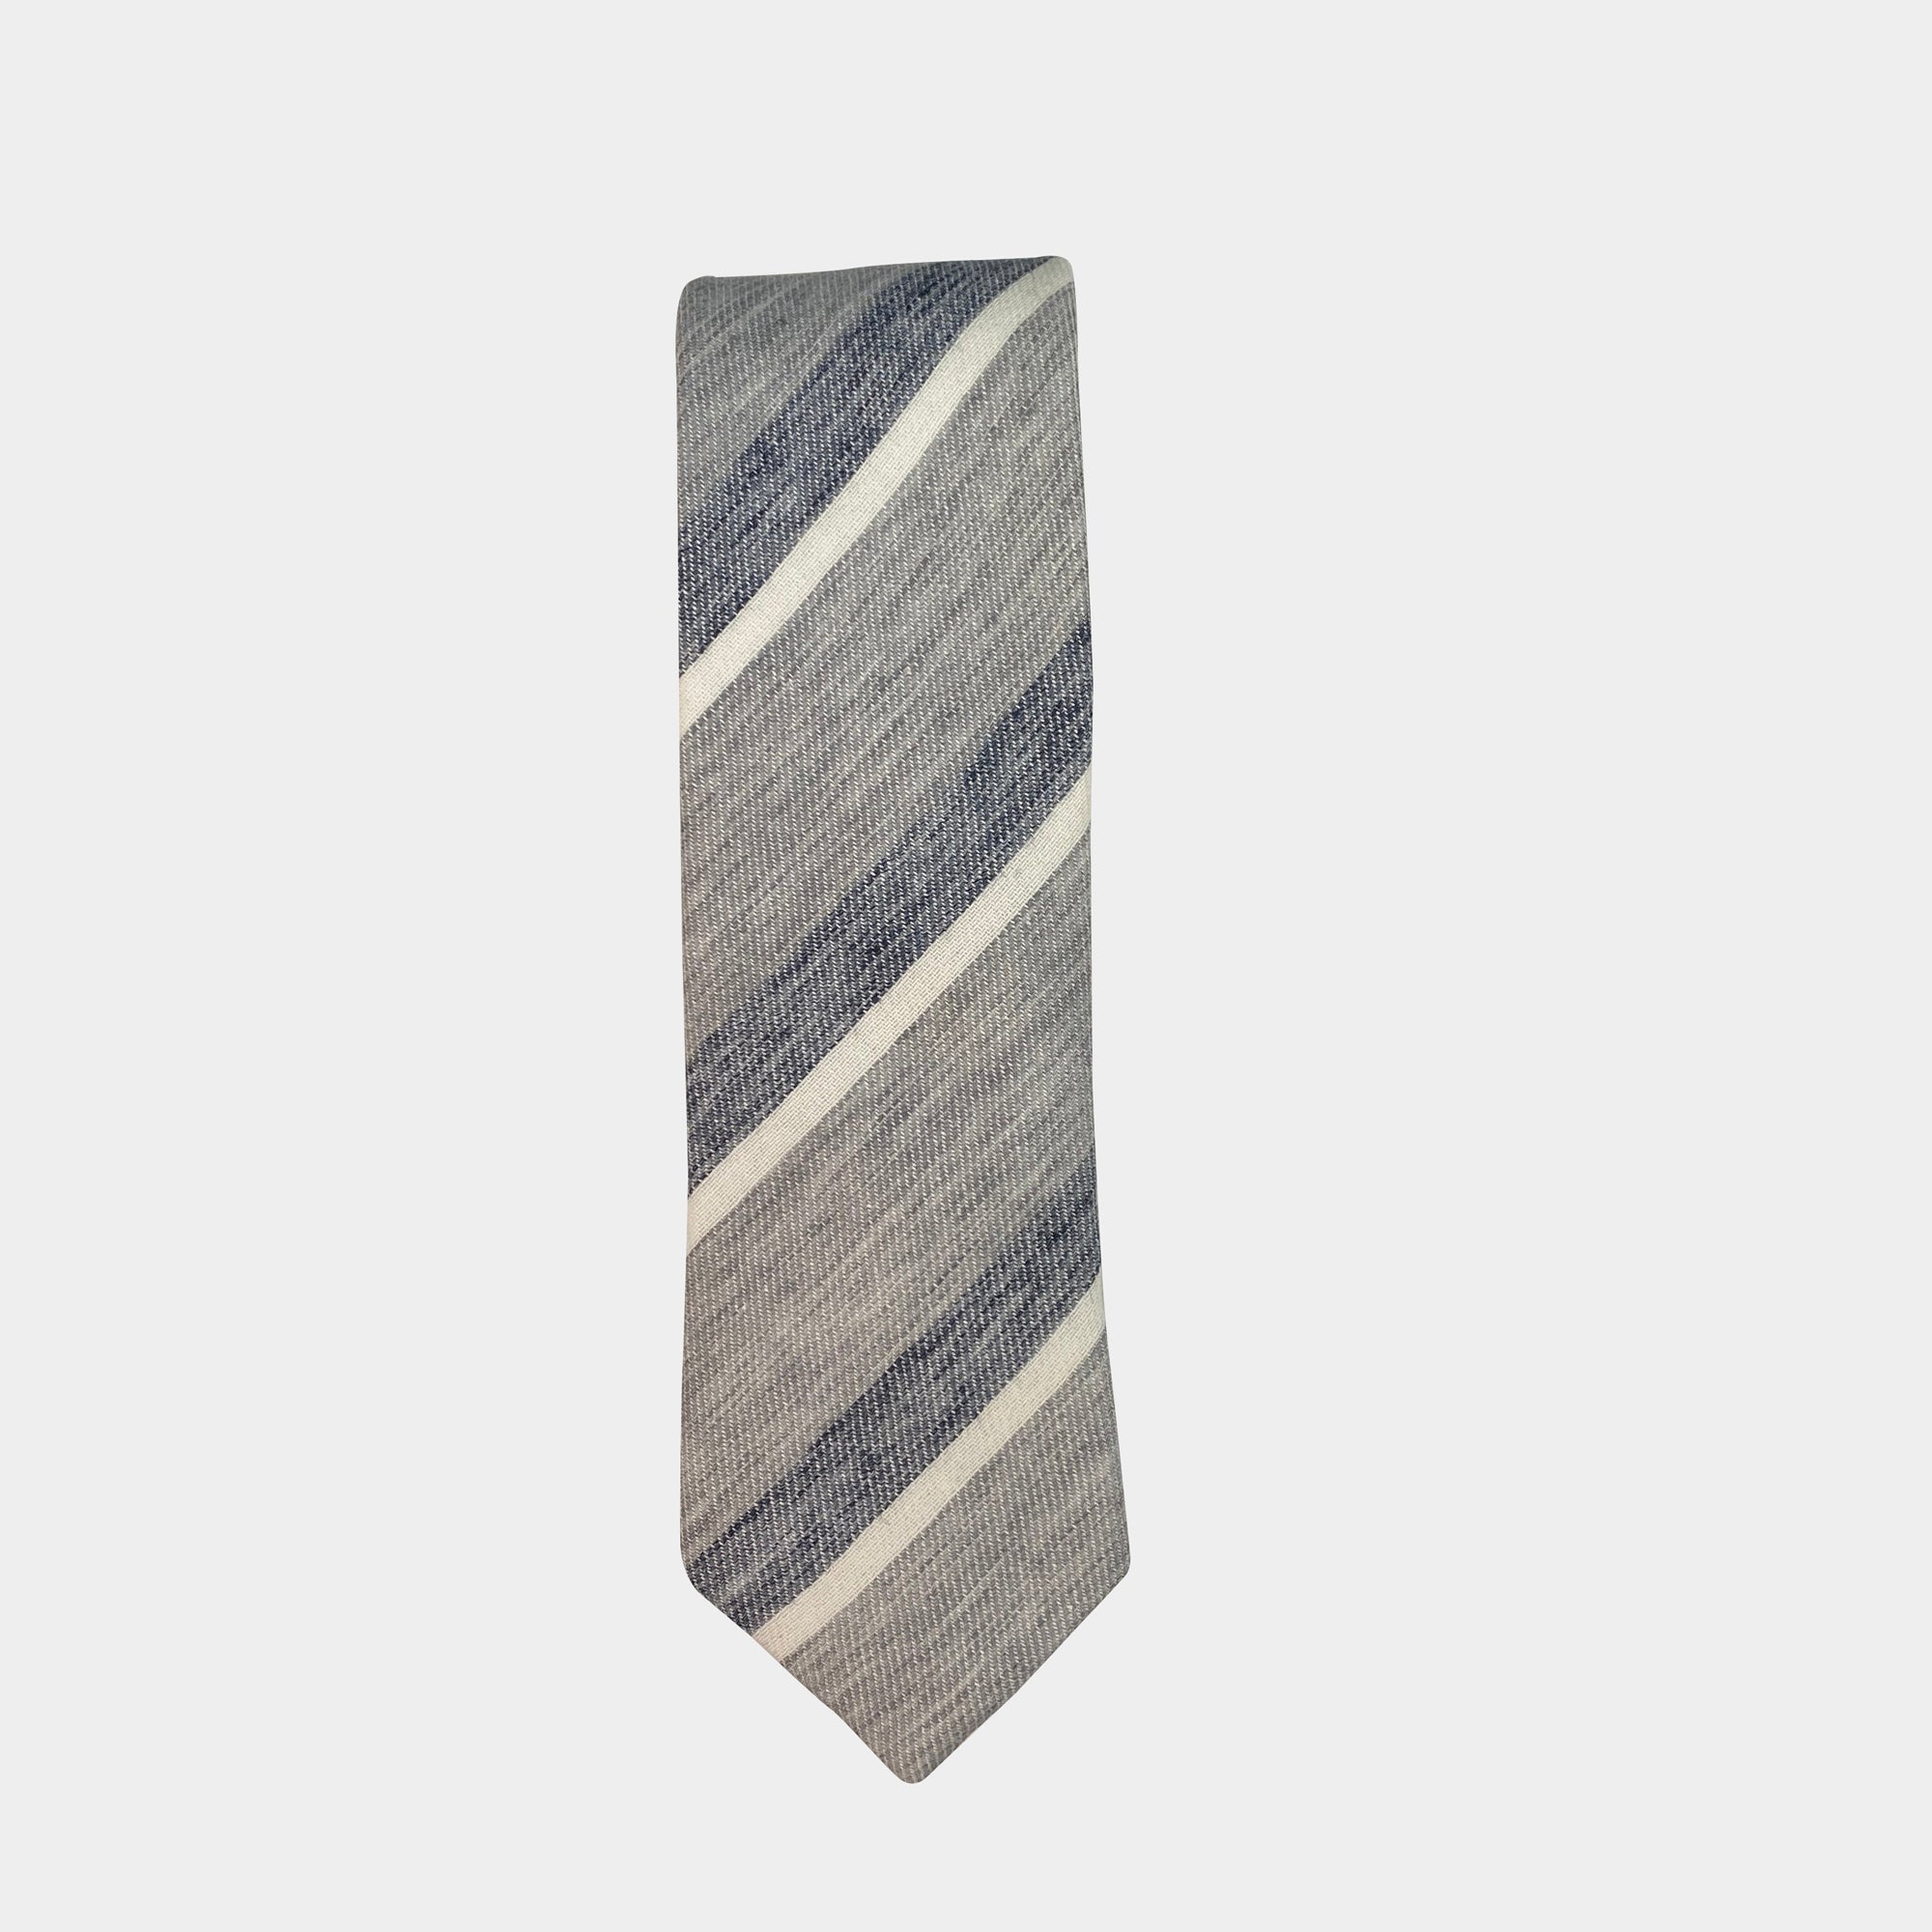 OLSEN - Men's Tie